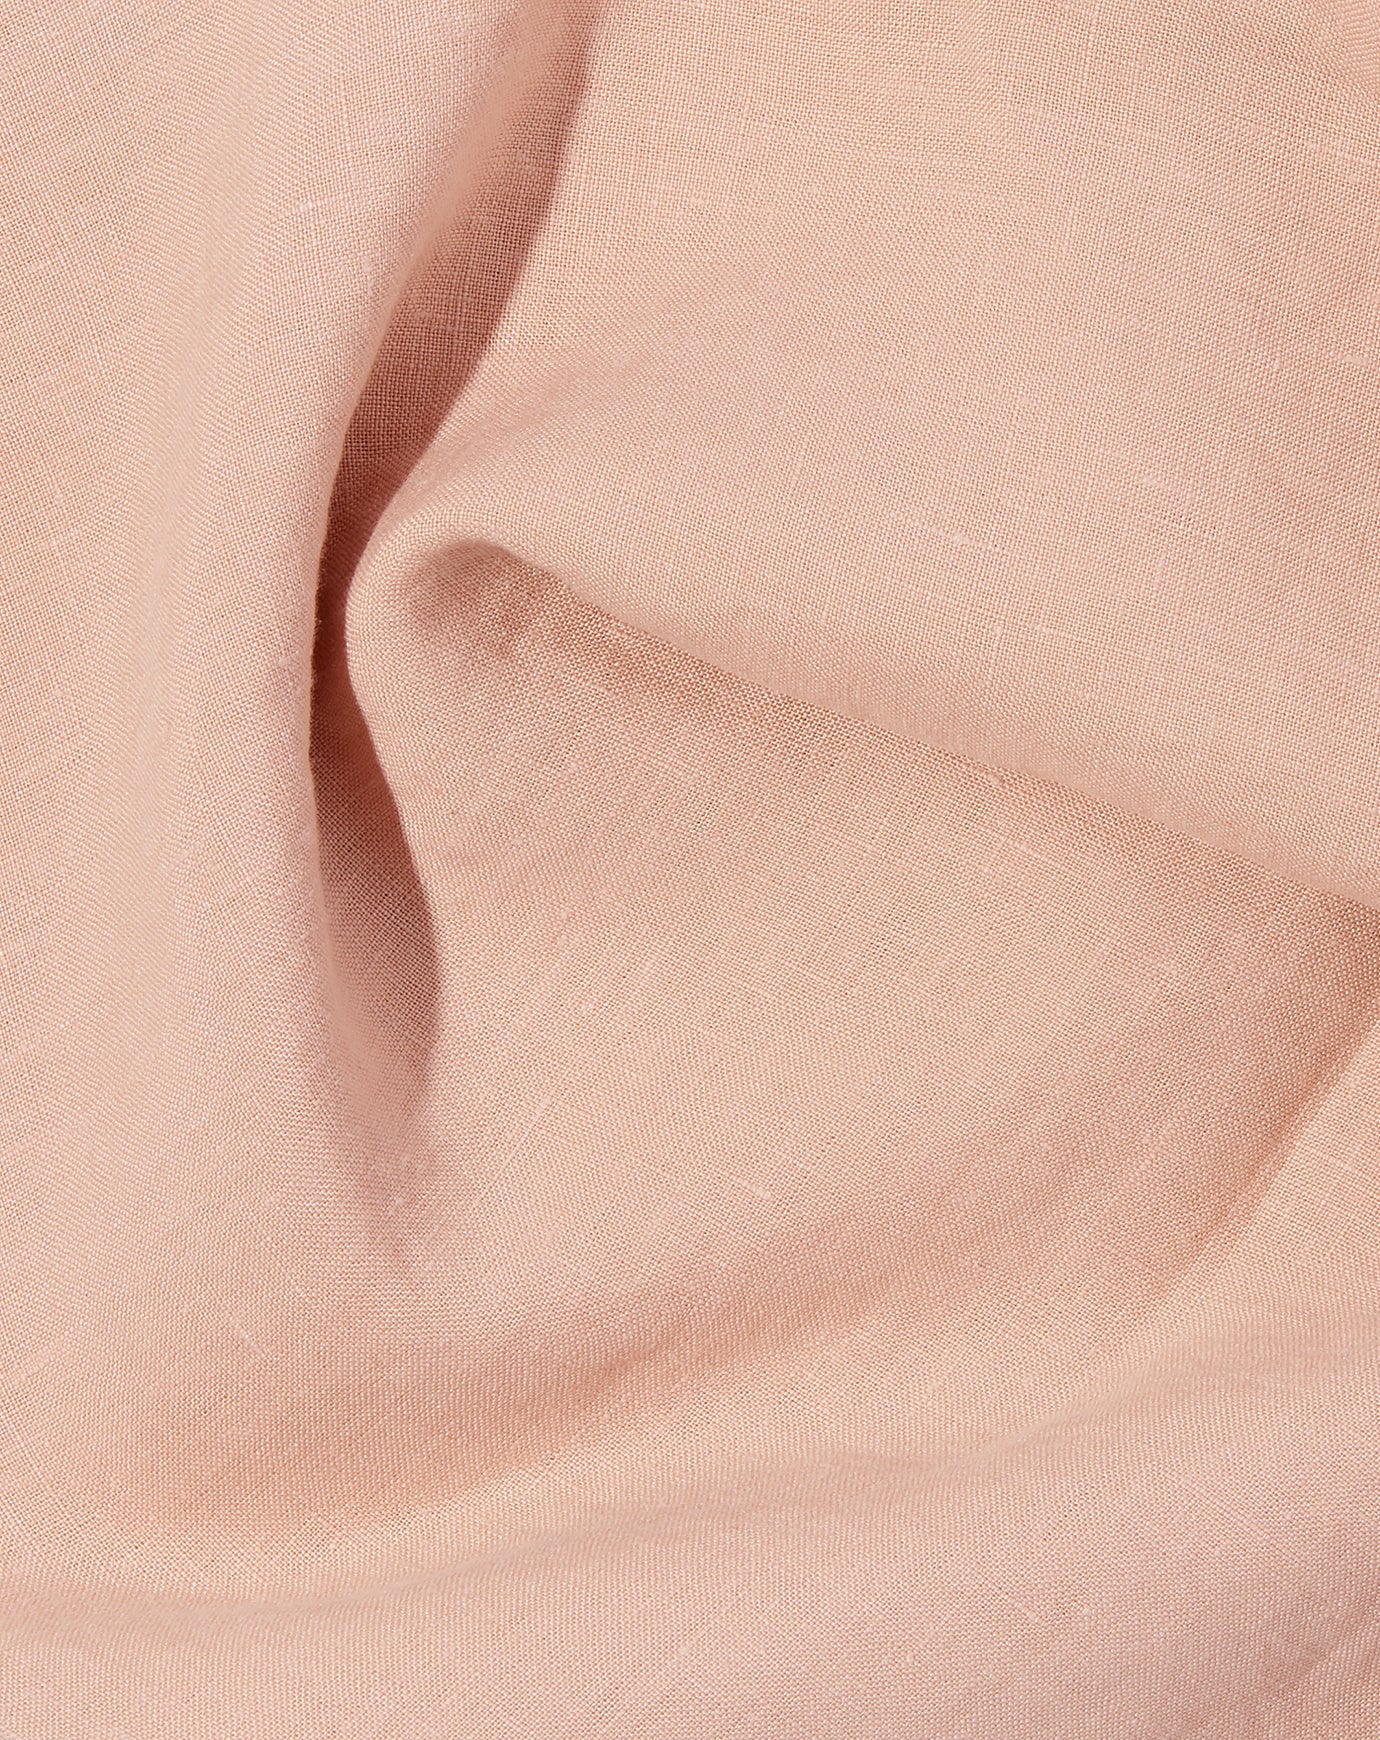 Deiji Studios Pillow Set in Clay Pink